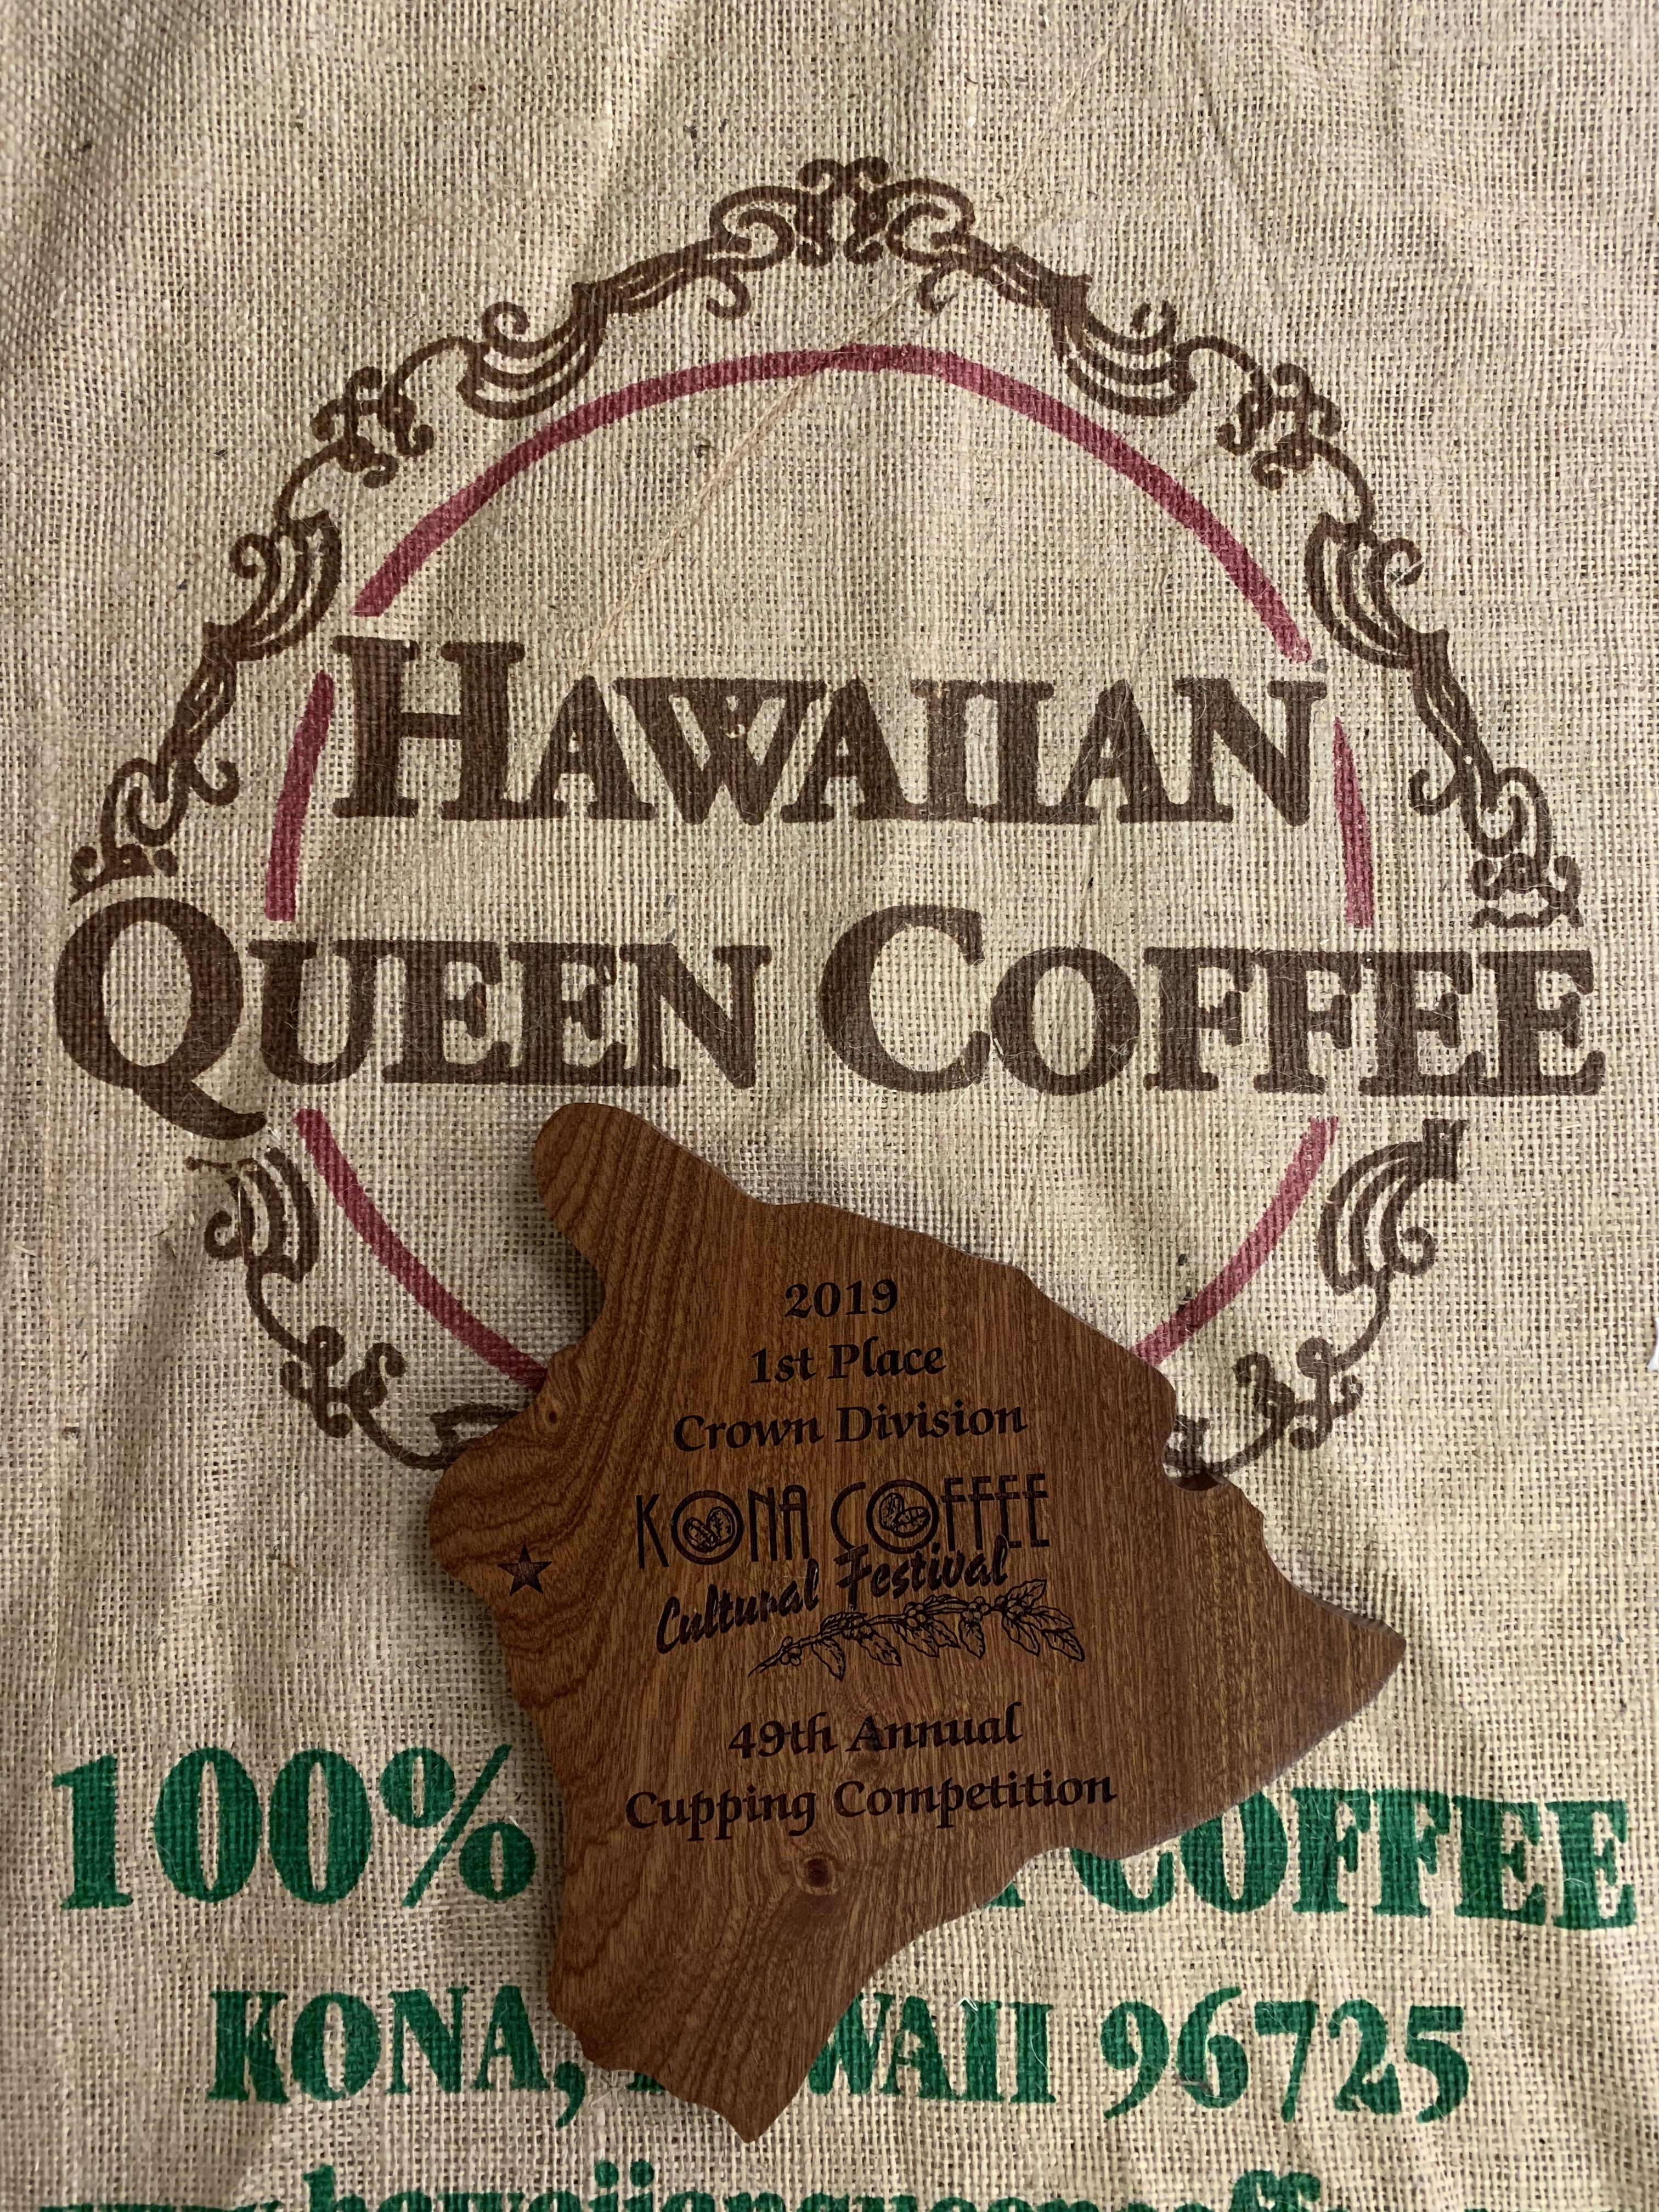 【送料無料】ハワイコナ-エクストラファンシー(200g)ハワイアンクイーンコーヒー